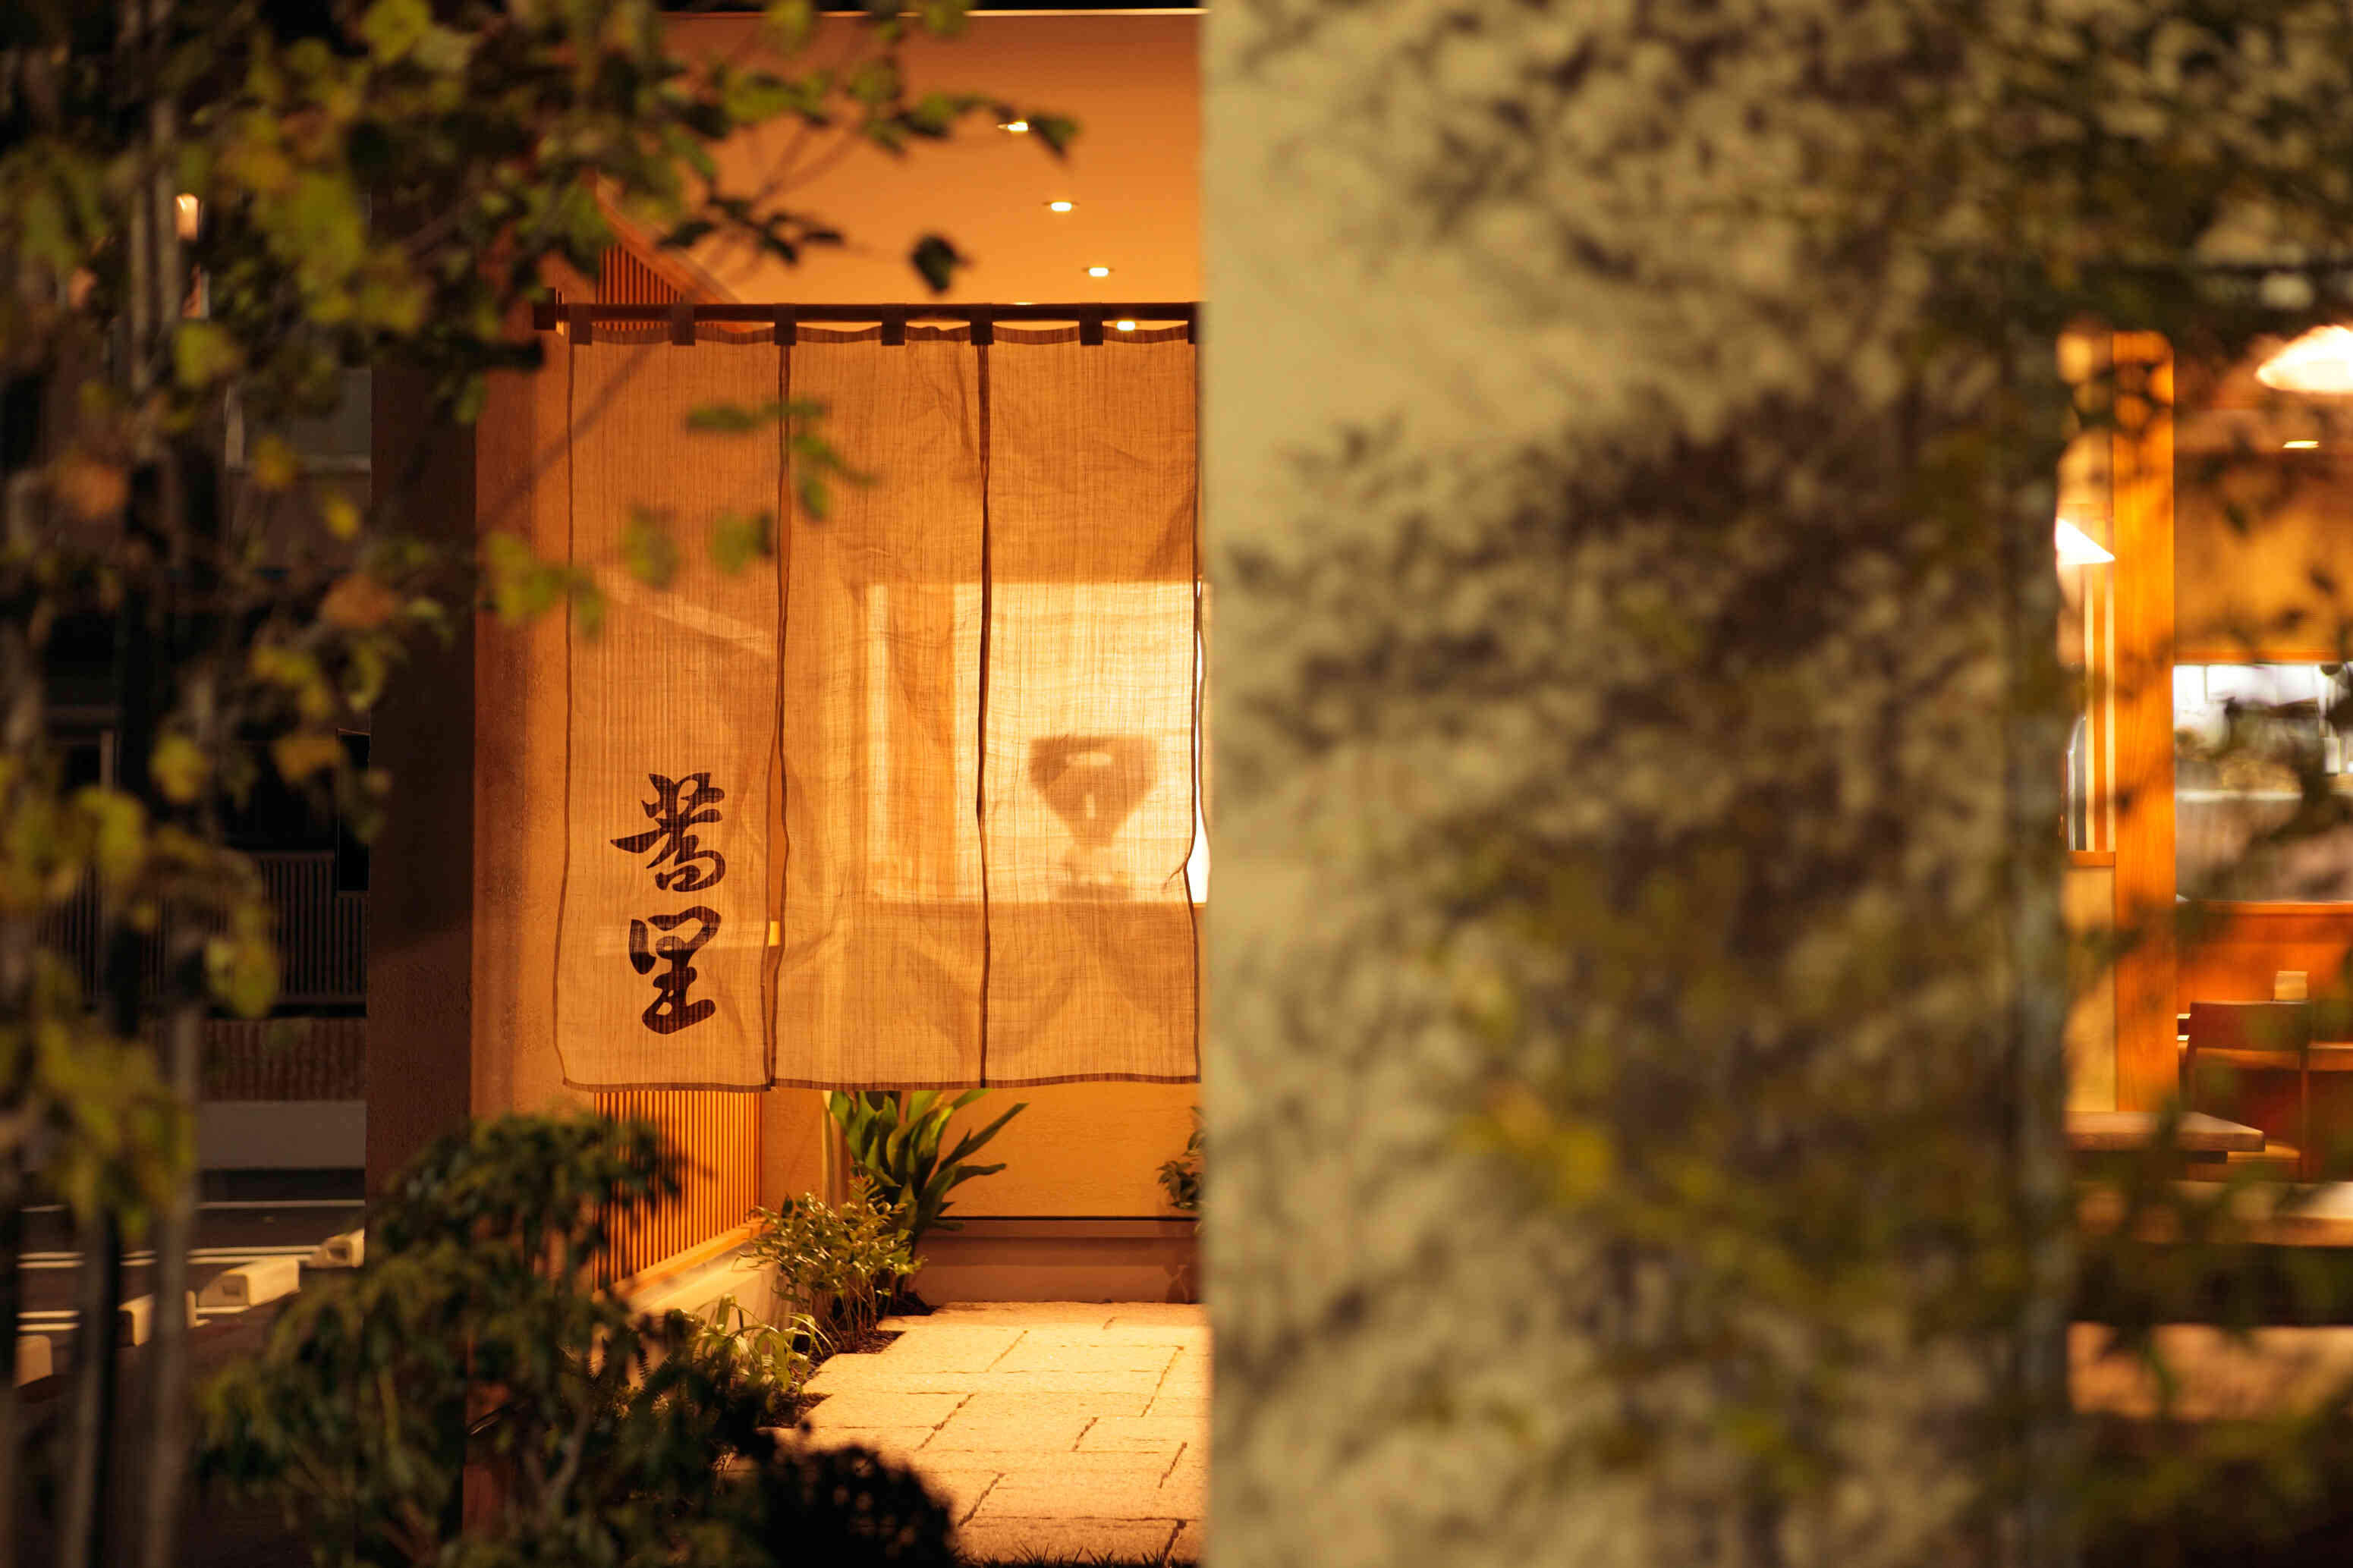 日本情緒を醸す暖簾をくぐると、玄そばの石臼挽きから創るそば屋蕎里の世界。